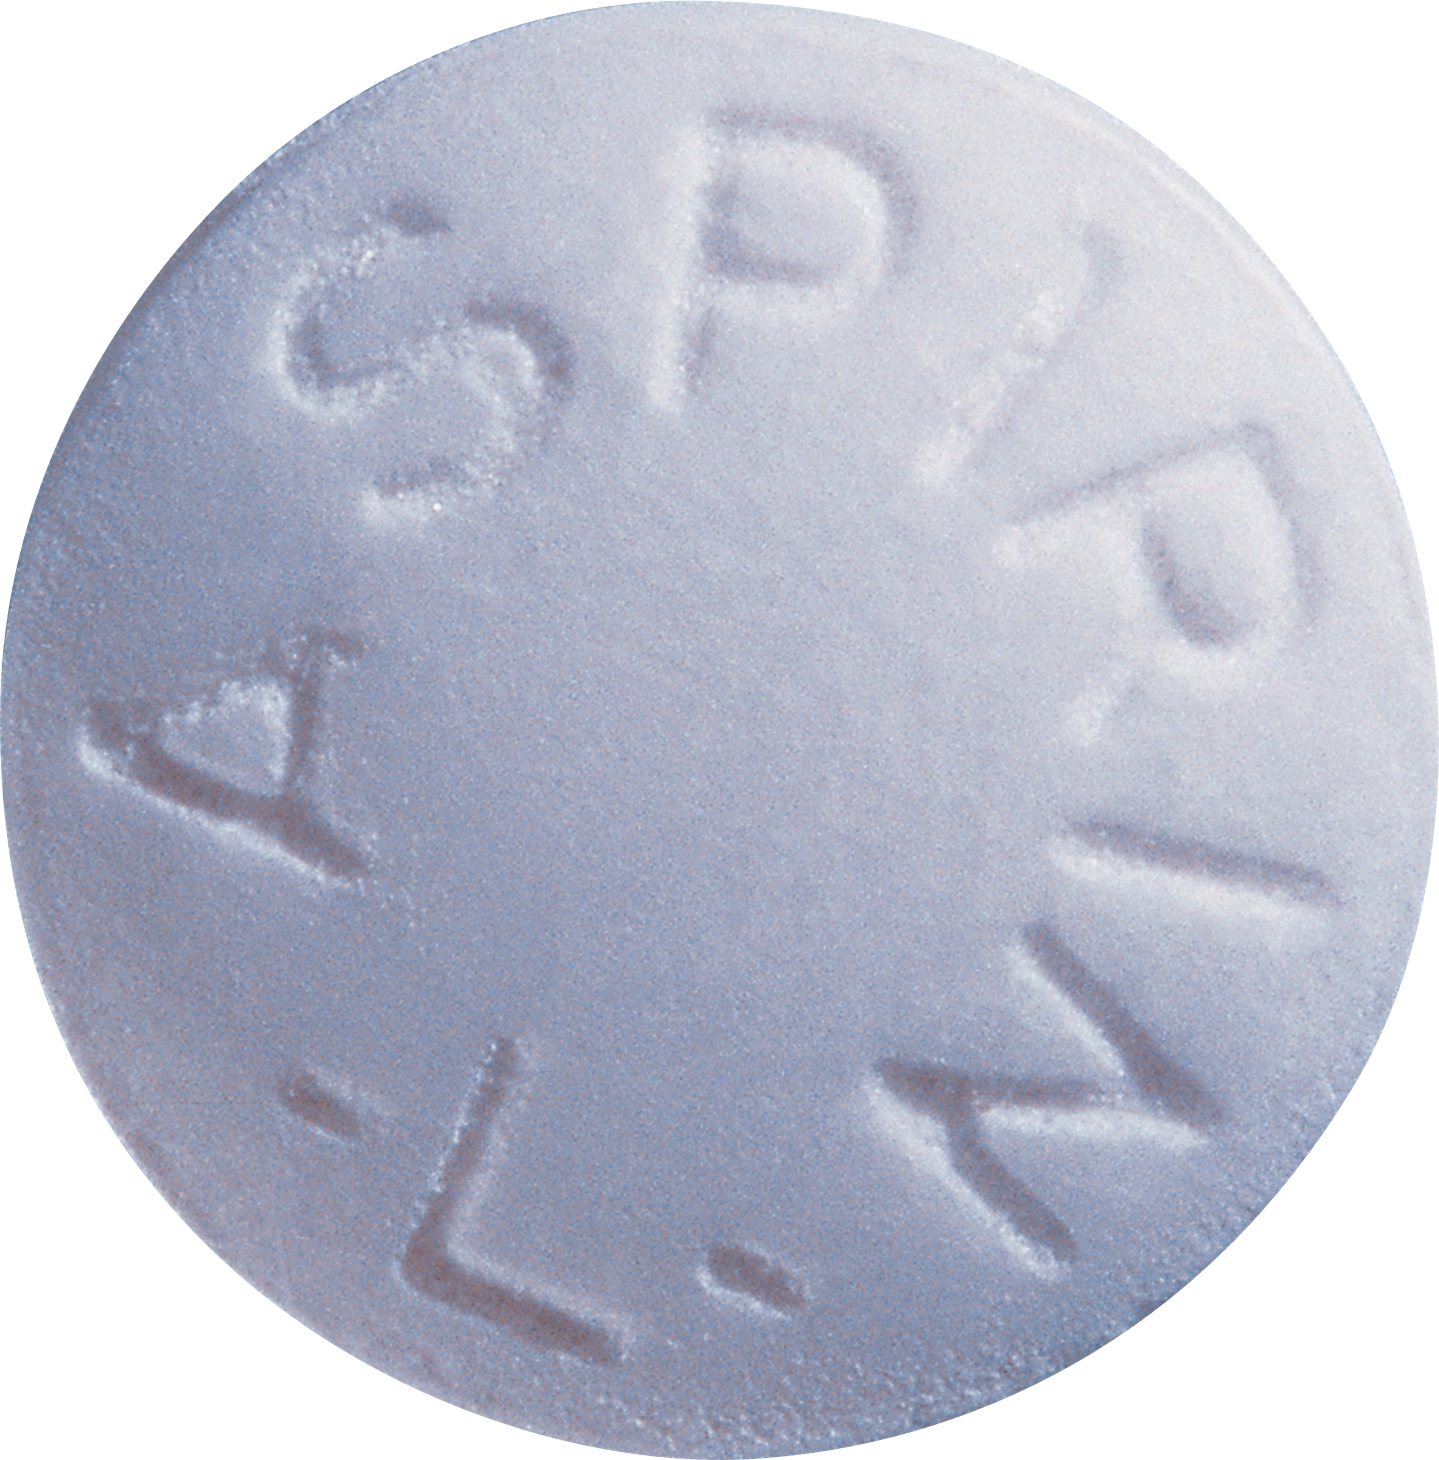 Aspirin Pill Closeup PNG image